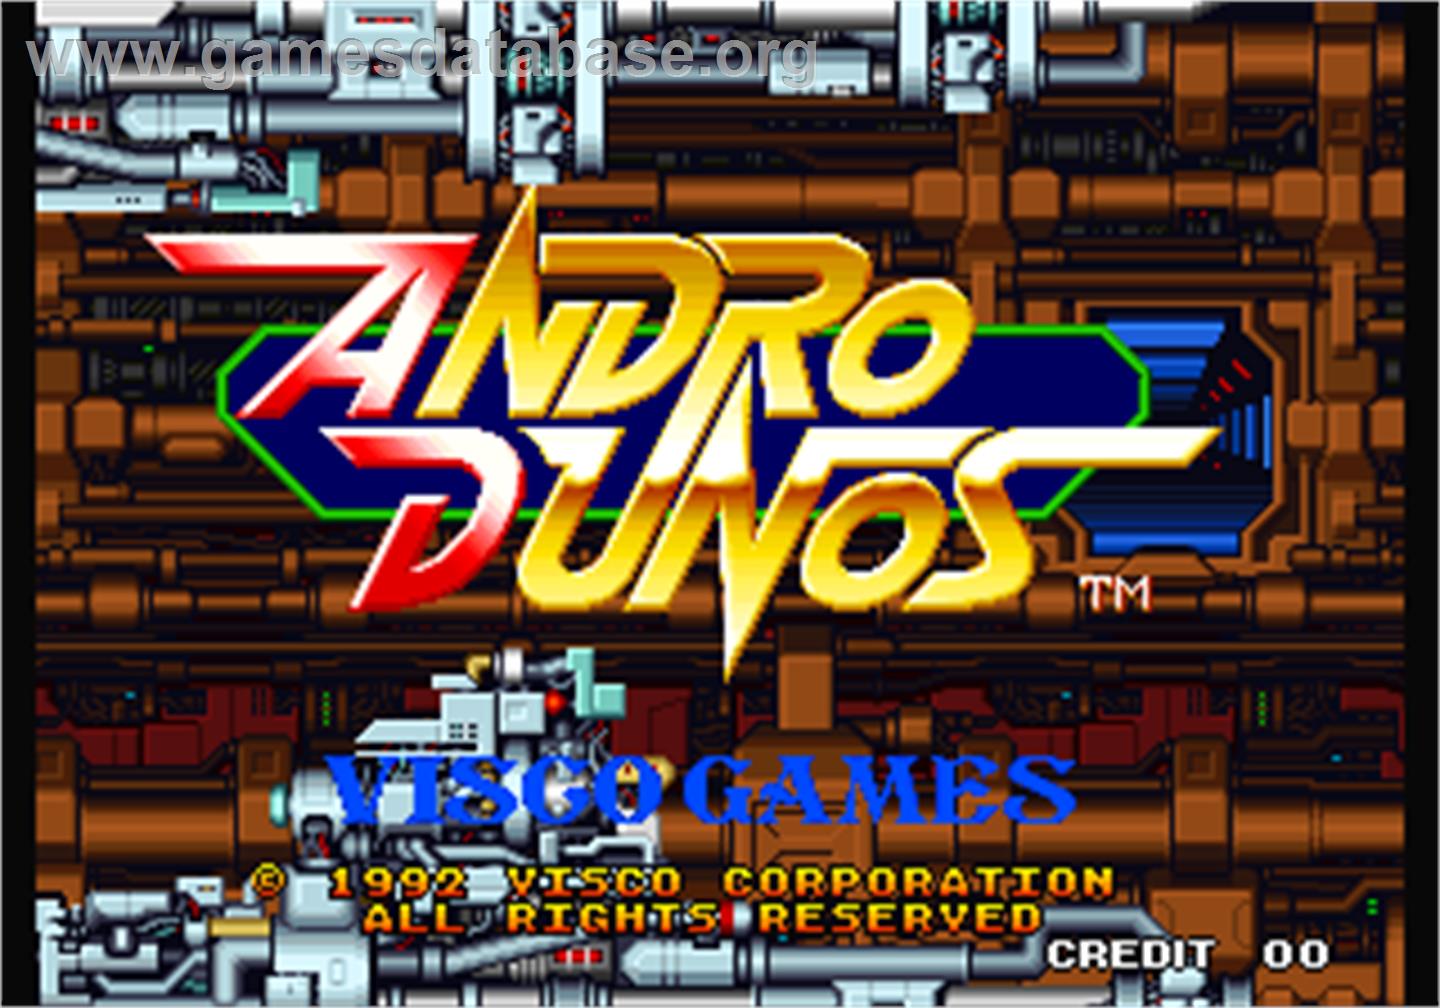 Andro Dunos - Arcade - Artwork - Title Screen